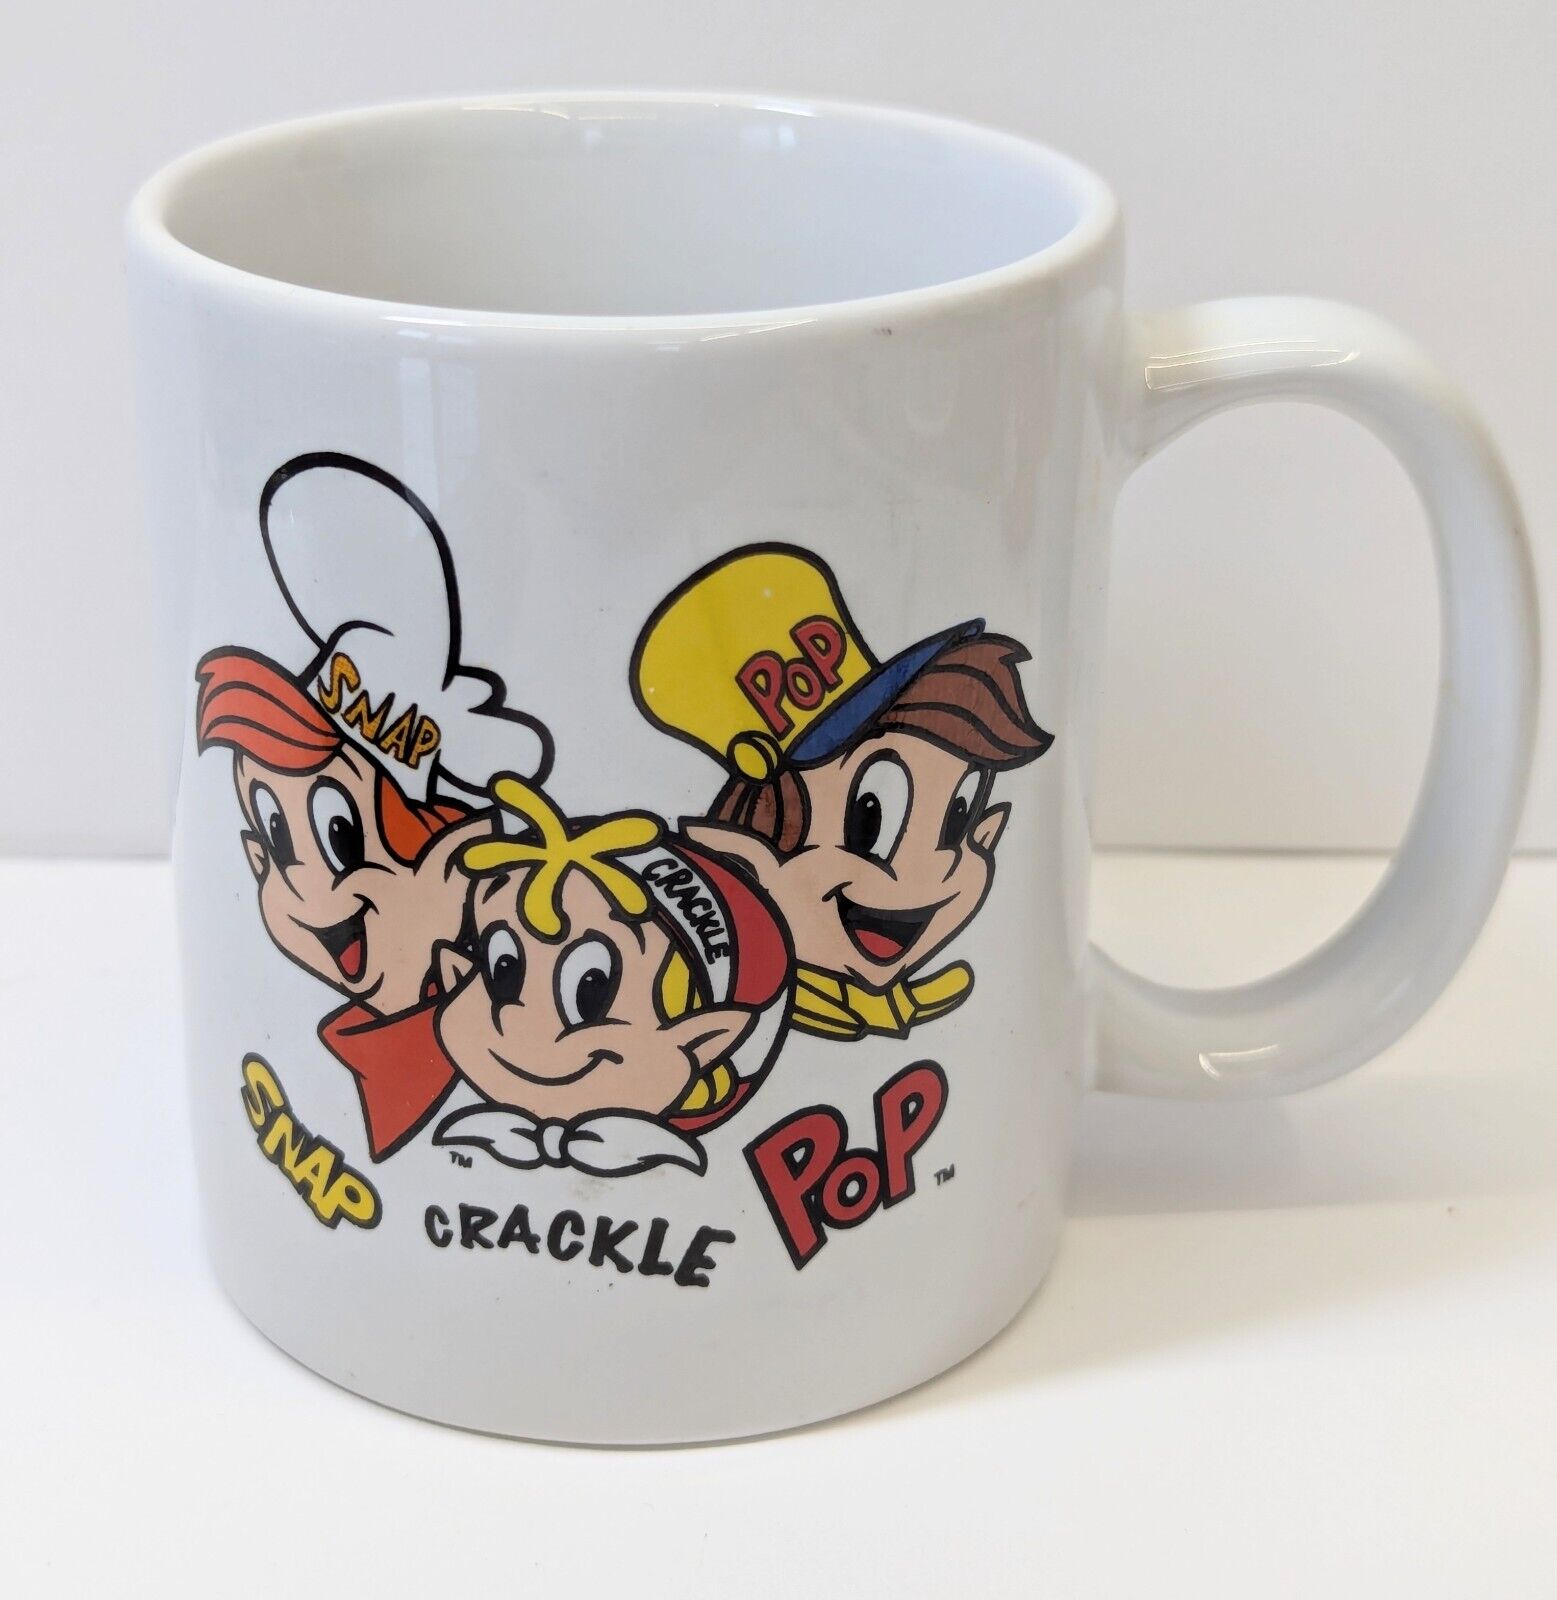 Vintage Snap Crackle Pop Mug 2001 Never Used